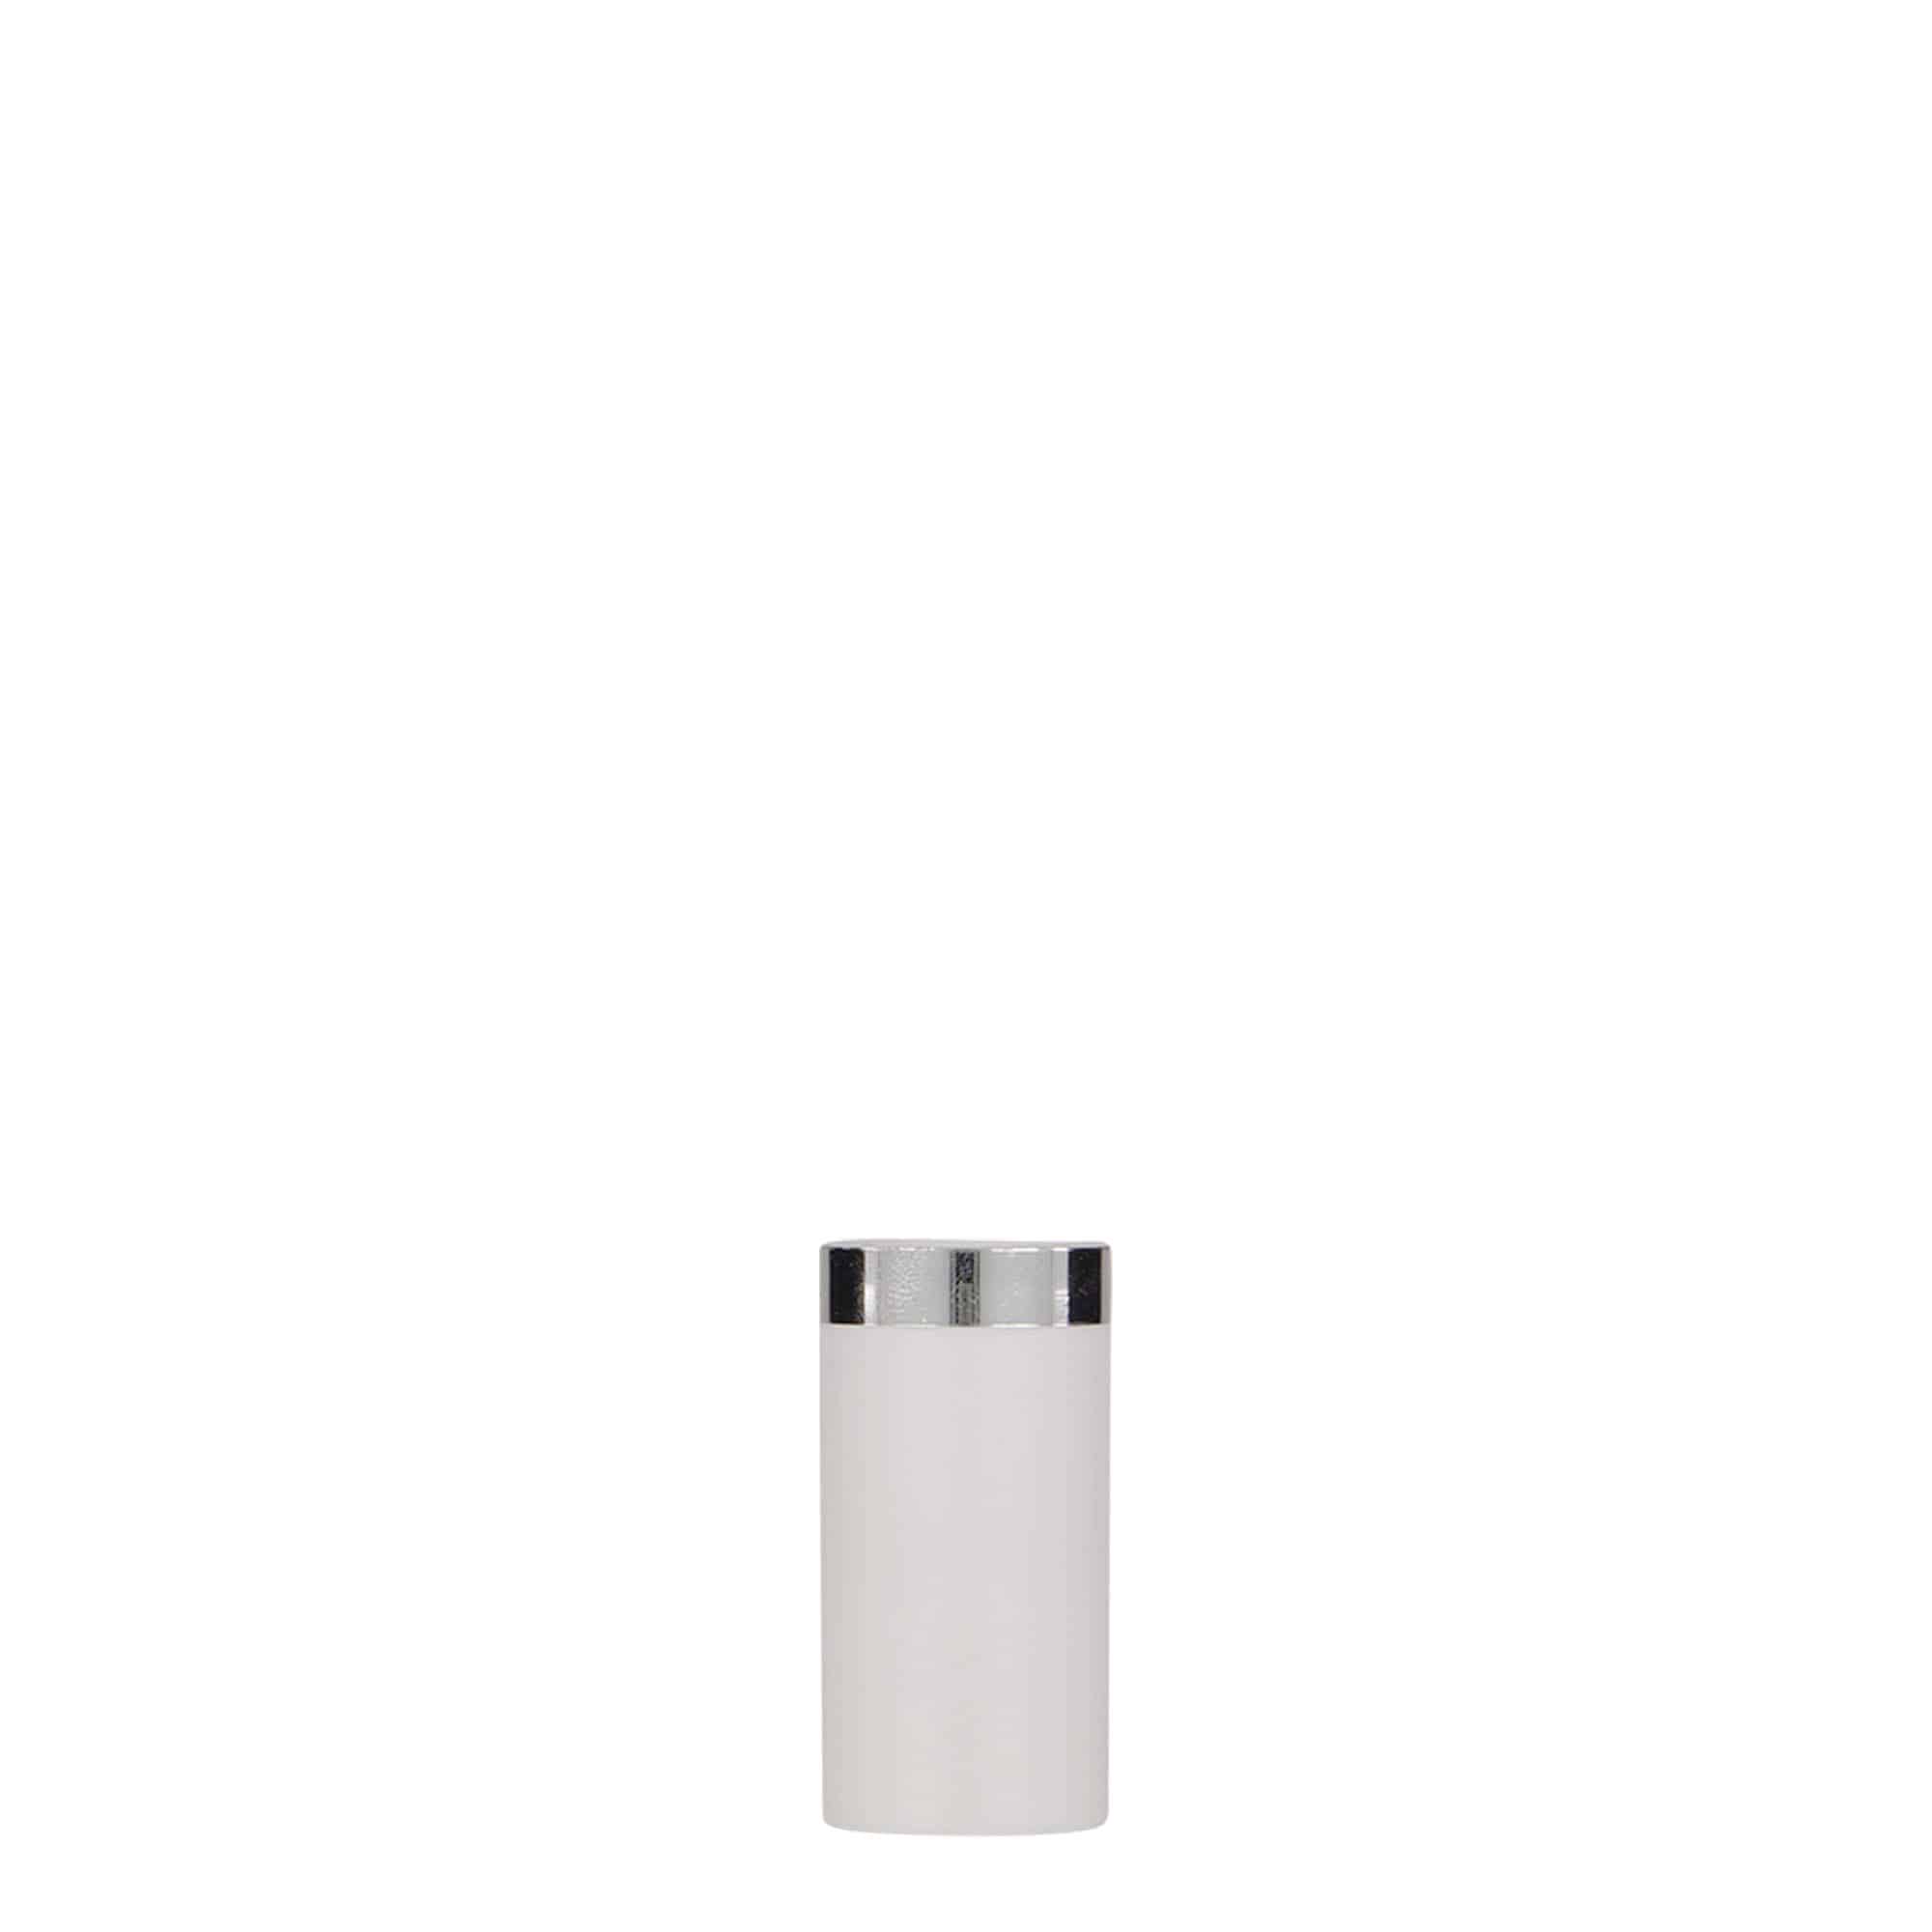 5 ml airless dispenser 'Nano', PP plastic, white